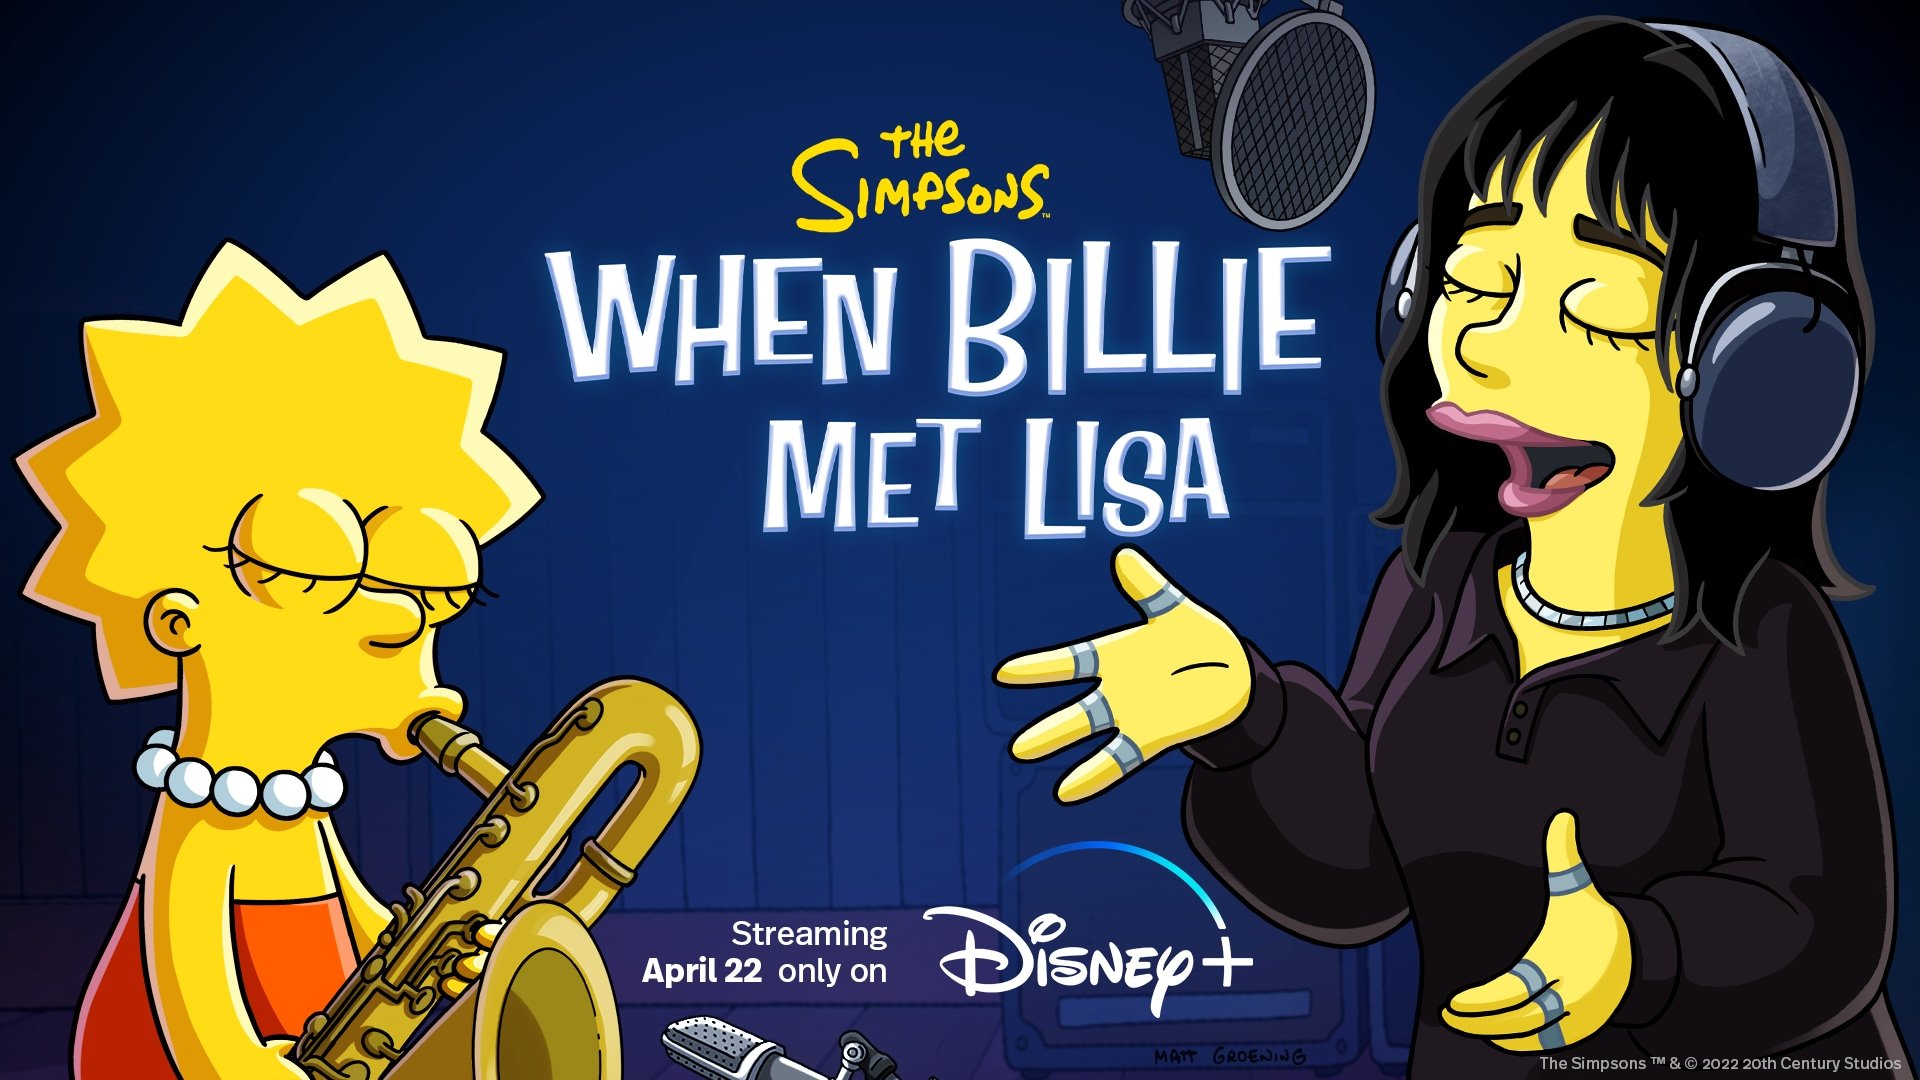 The Simpsons When Billie Met Lisa